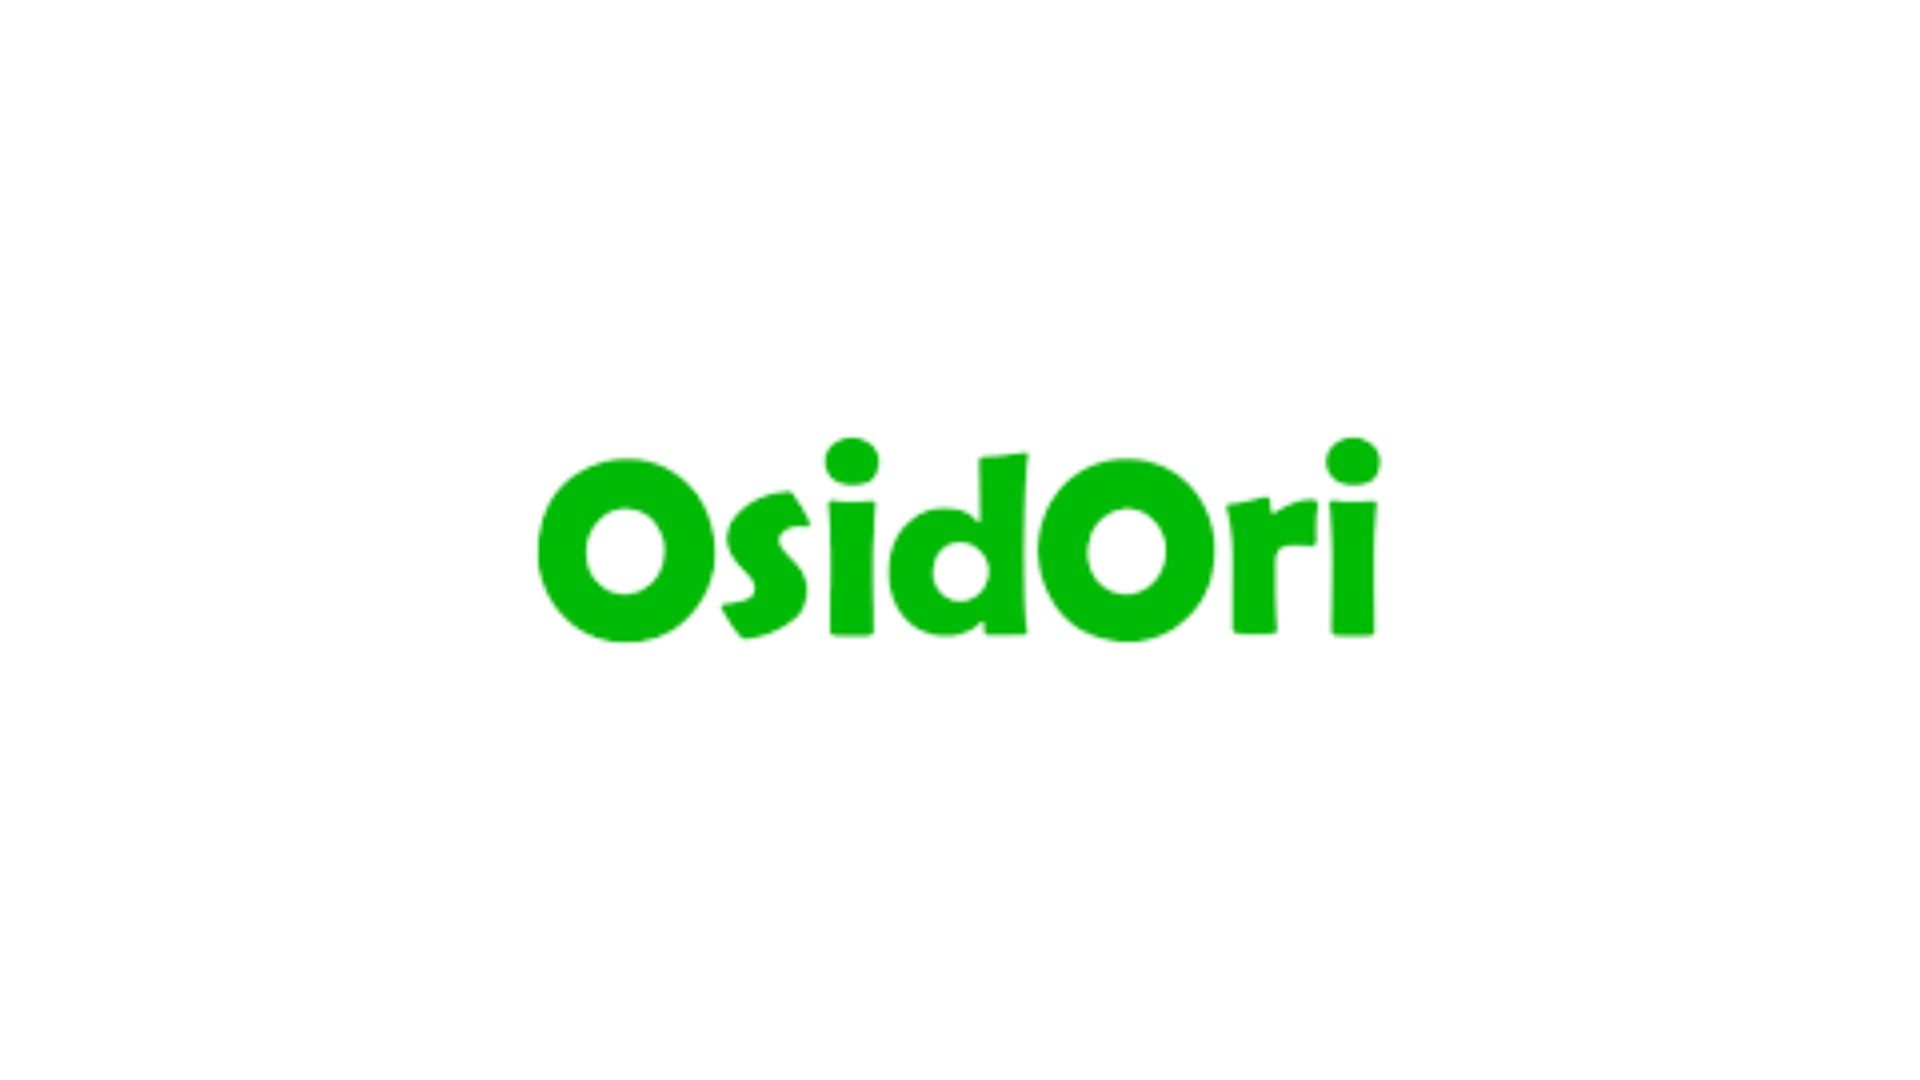 OsidOri